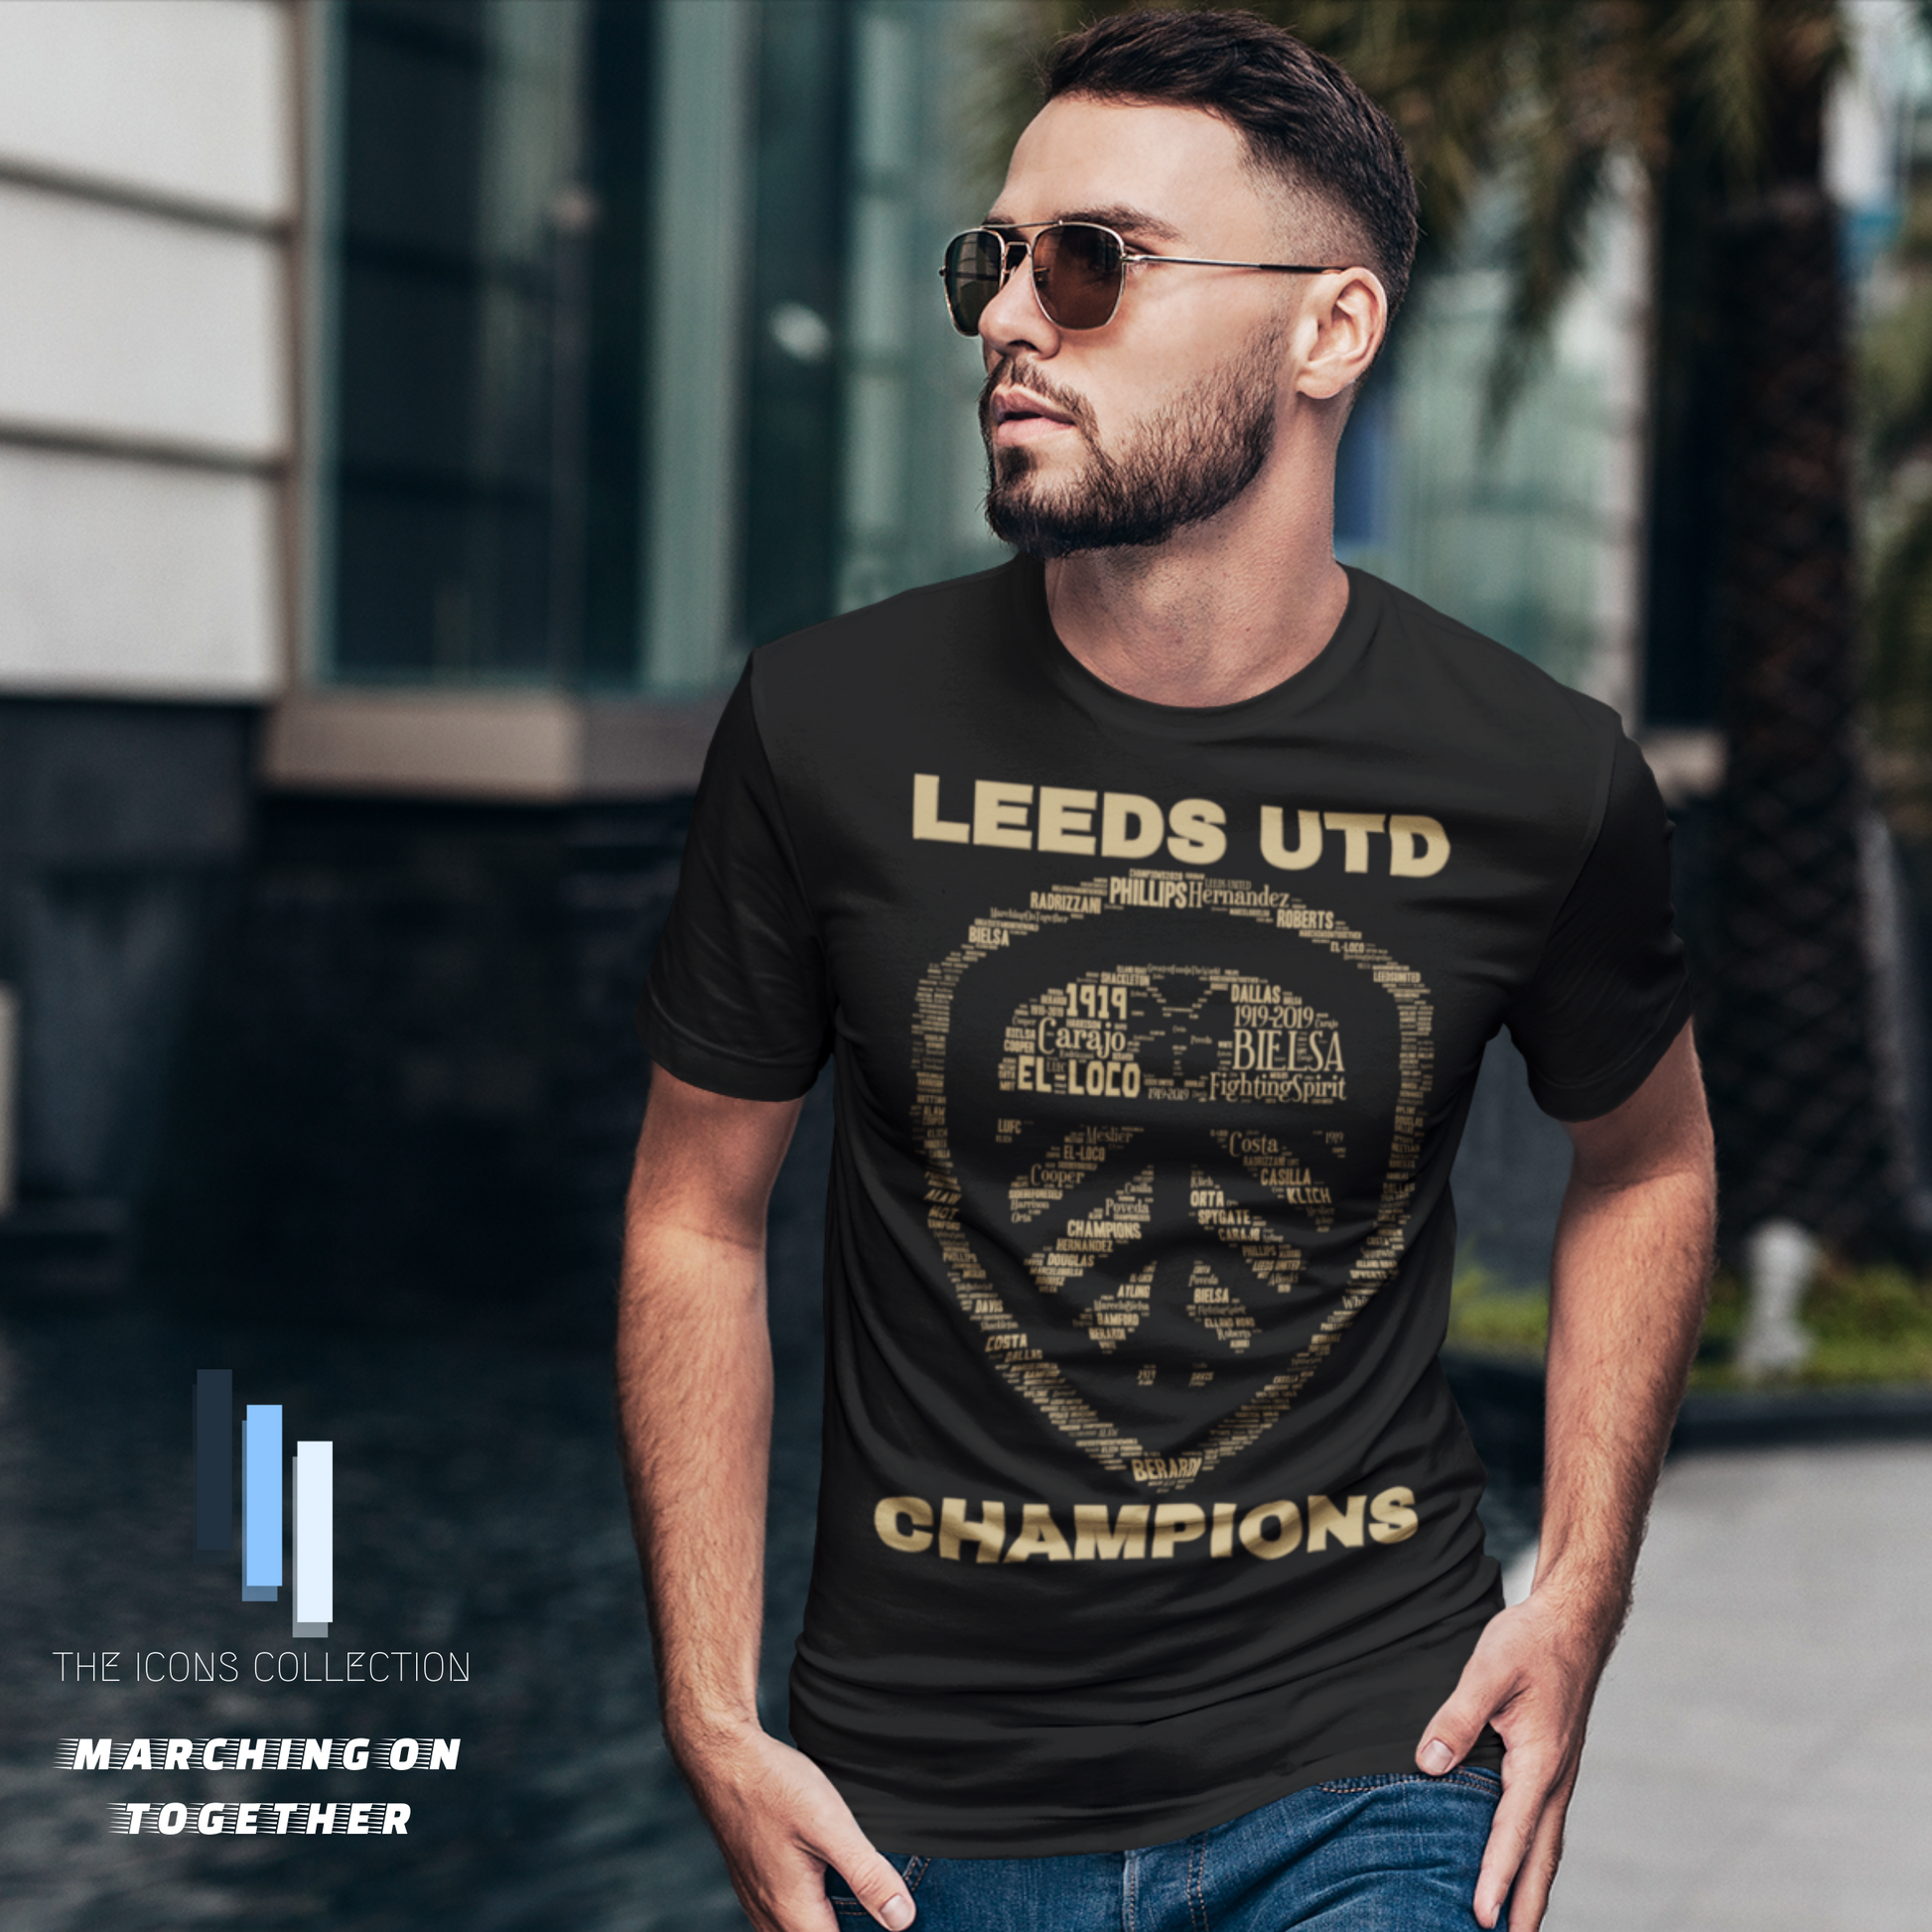 Leeds United Champions T shirt